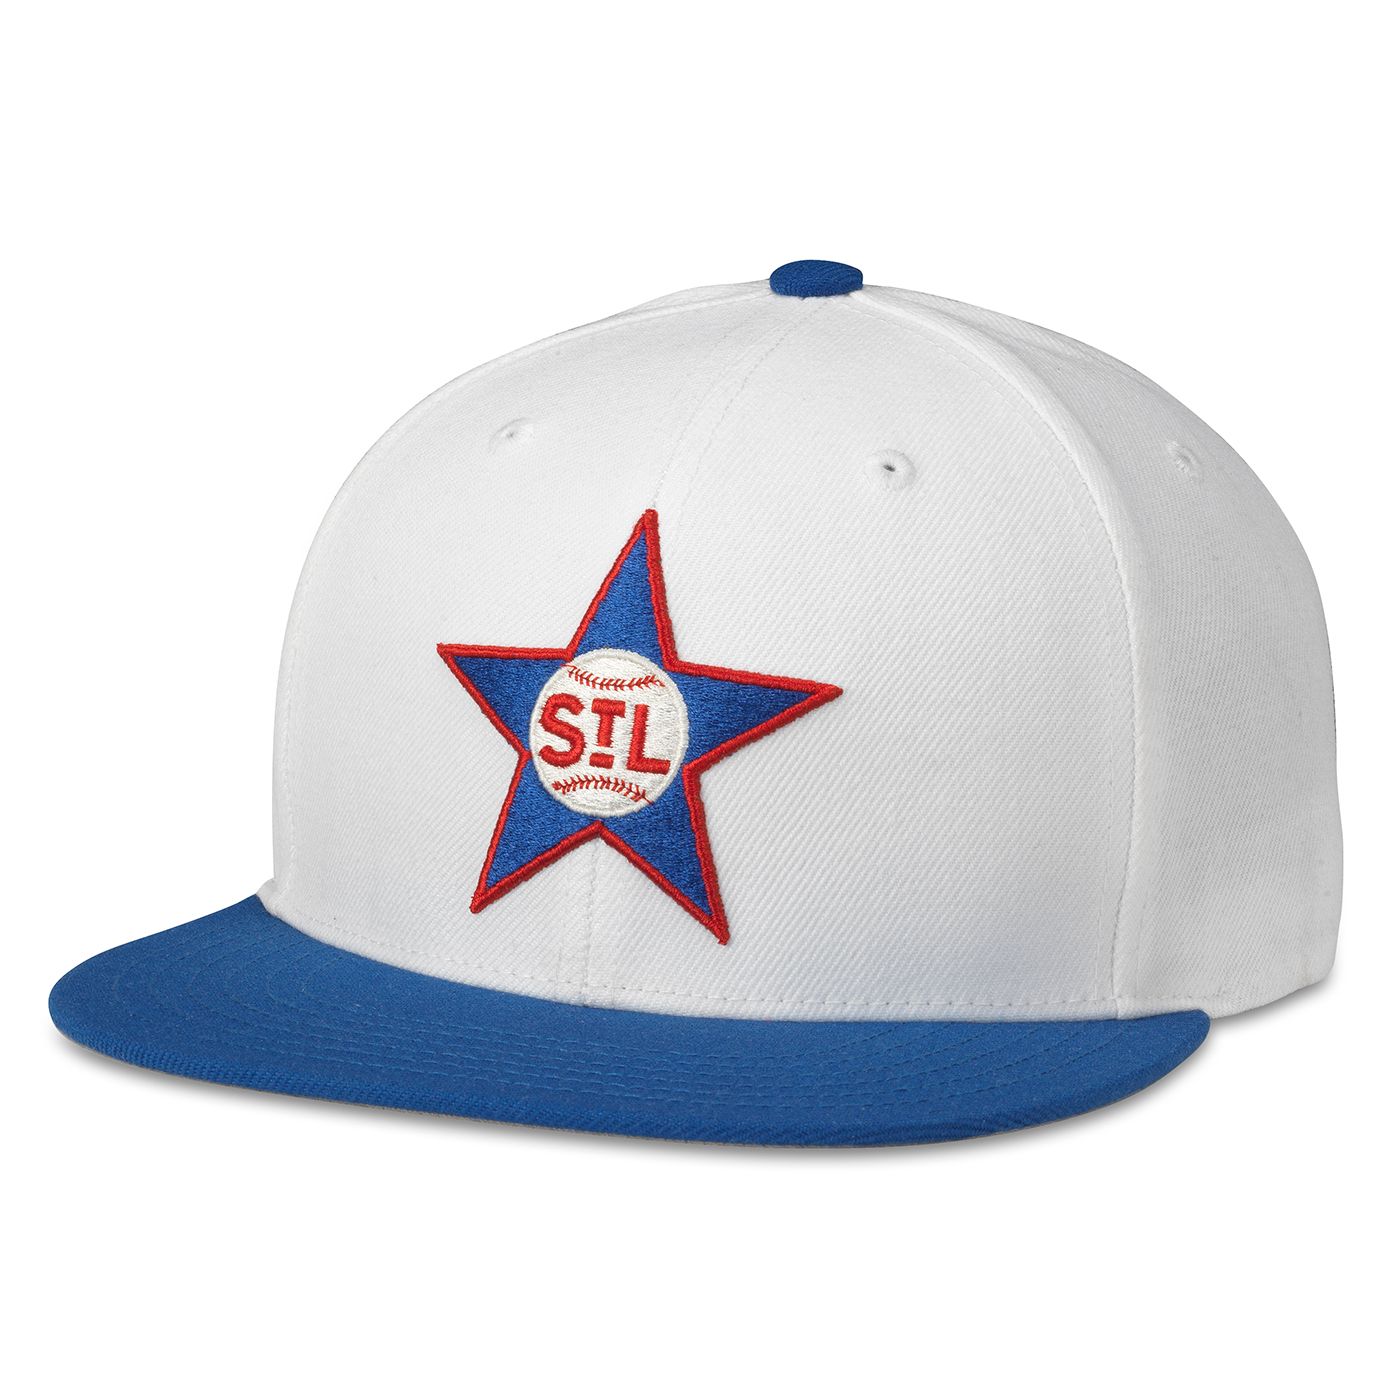 ST LOUIS STARS Archive 400 Hat